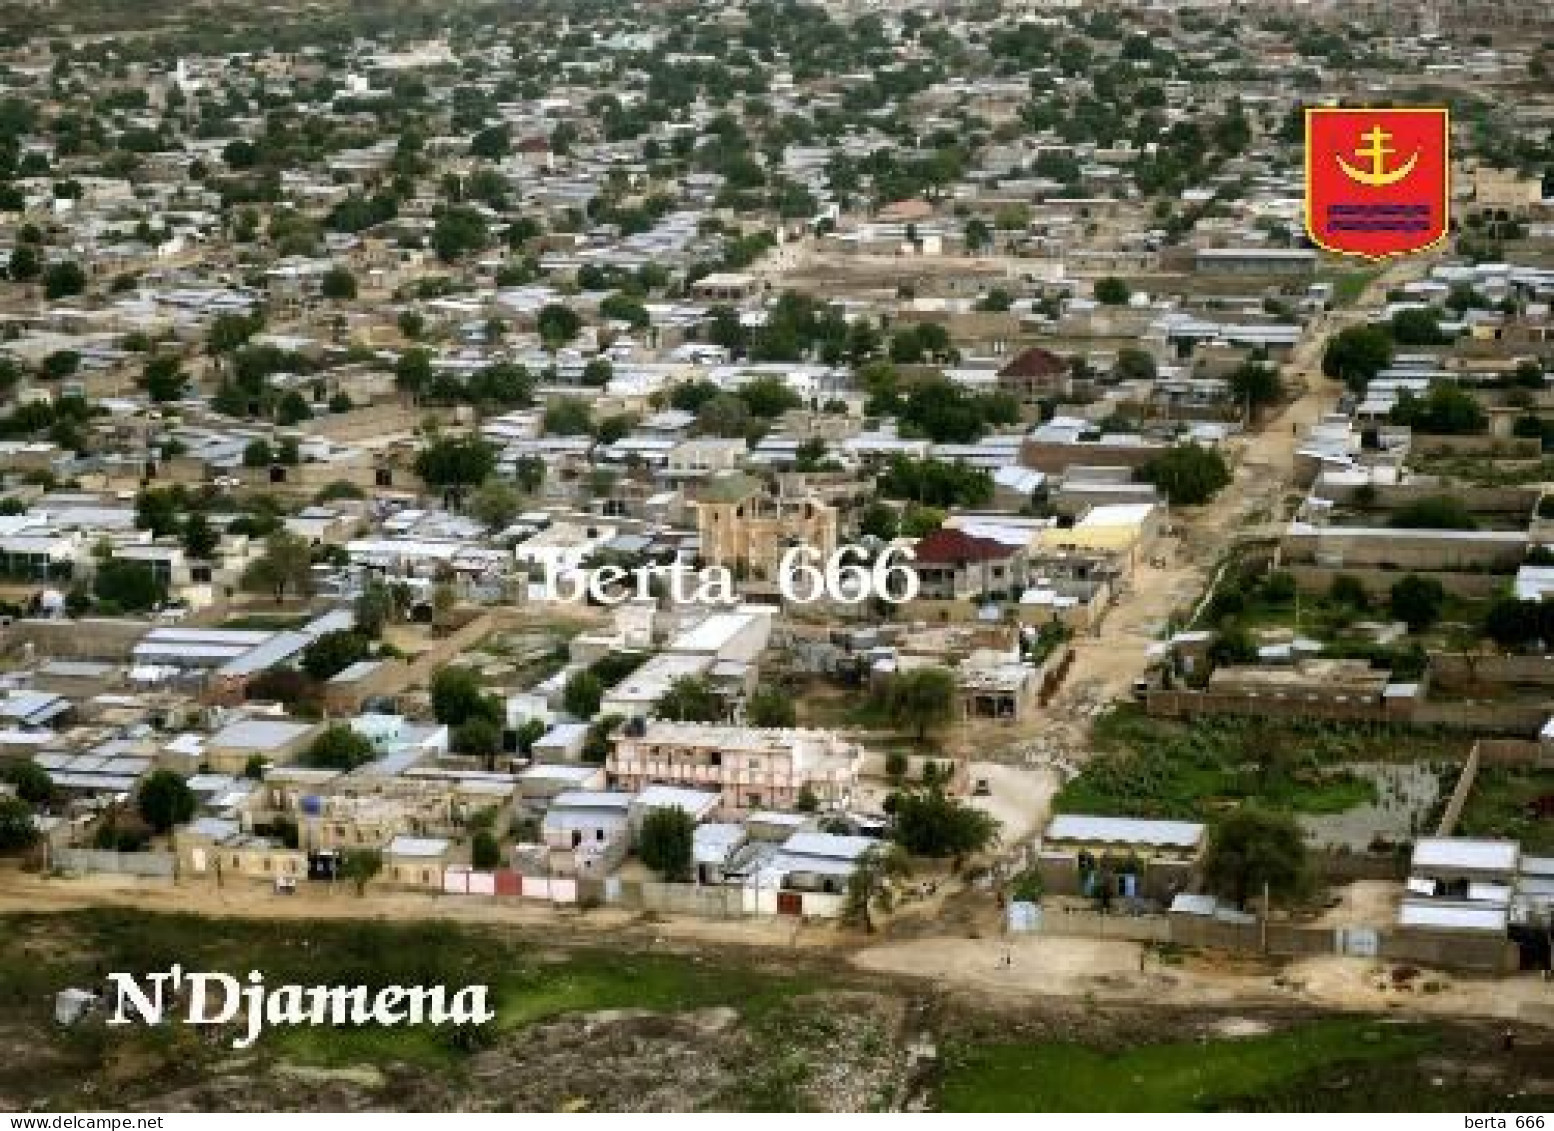 Chad N'Djamena Aerial View New Postcard - Chad